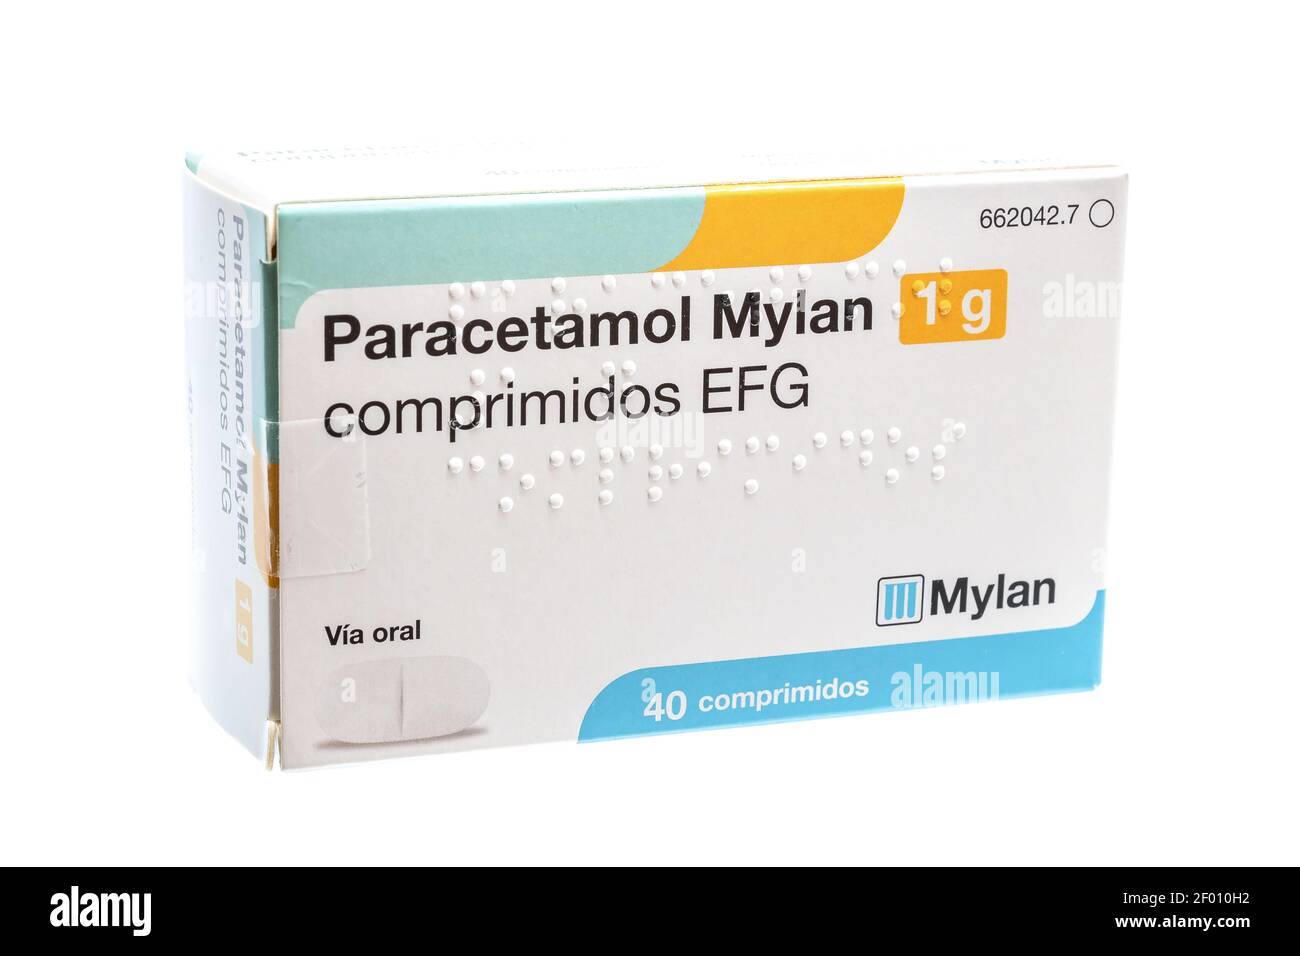 Huelva, Spanien - 6. März 2021: Spanische Schachtel Paracetamol Mylan. Auch bekannt als Acetaminophen, ist ein Medikament zur Behandlung von Schmerzen und Fieber. Es ist typi Stockfoto